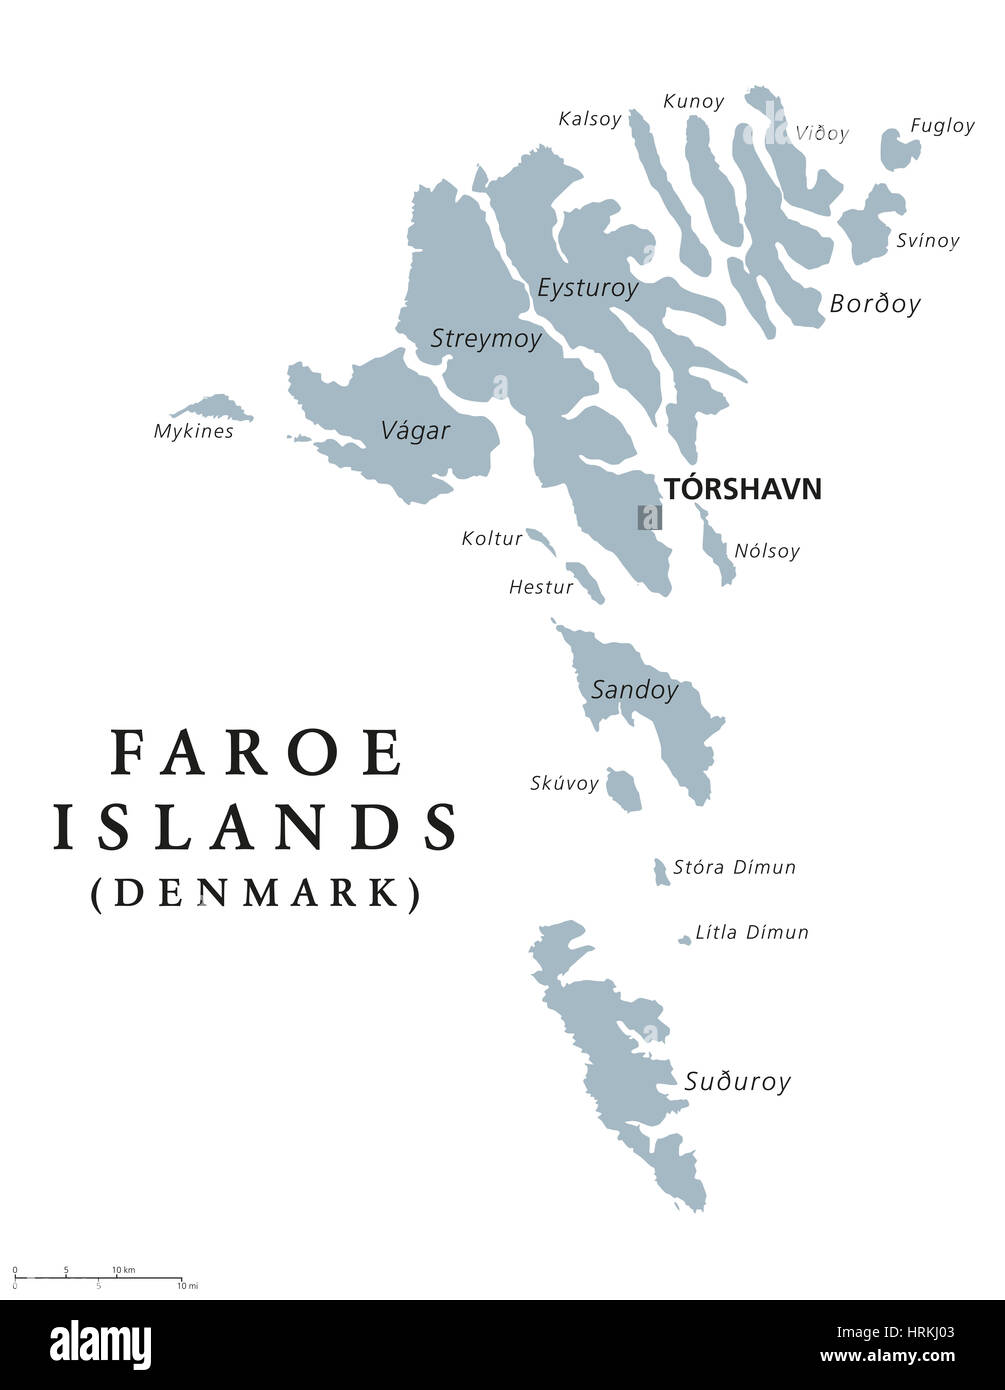 Îles Féroé carte politique avec capital Torshavn, également les îles Féroé. Pays autonome et d'une partie du royaume de Danemark. Banque D'Images